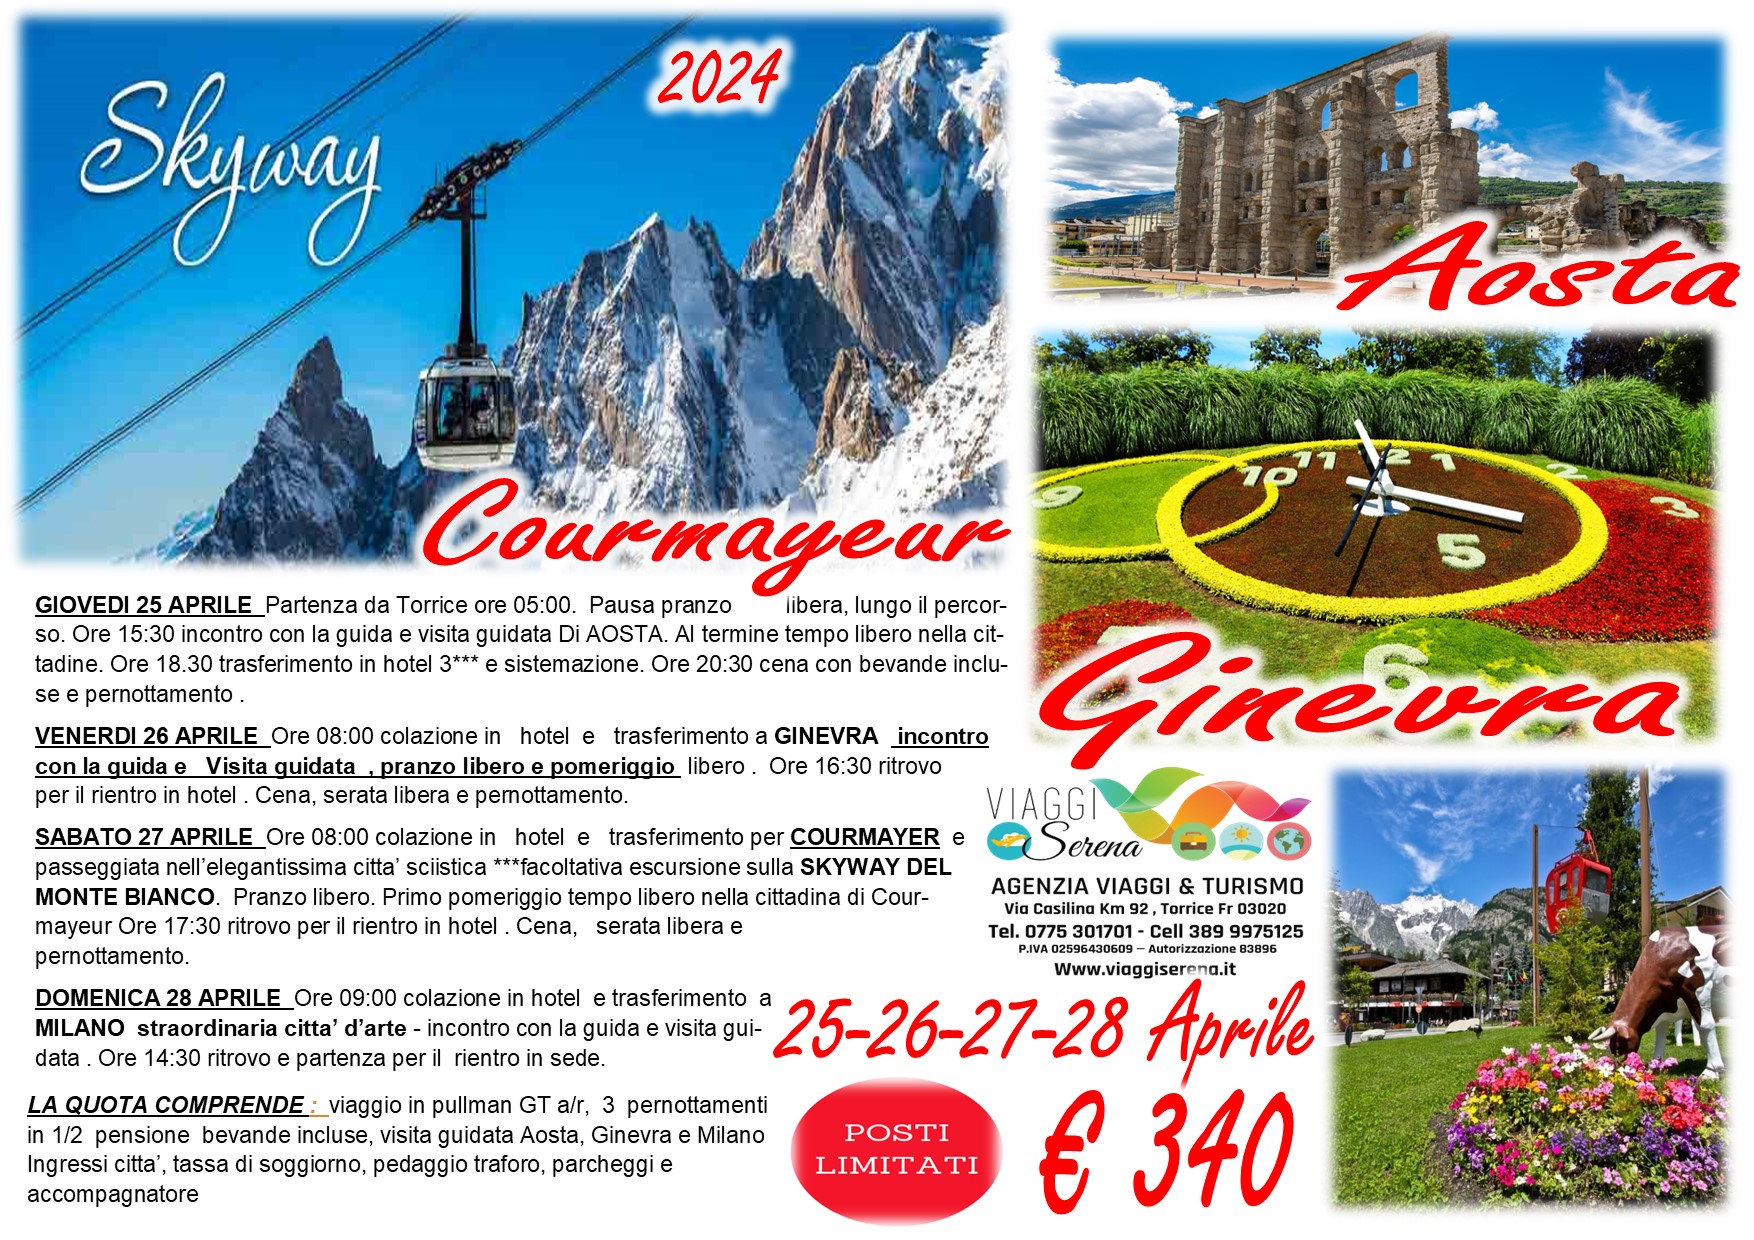 Viaggi di gruppo: Courmayeur, Aosta, Ginevra, SkyWay Monte Bianco e Milano 25-26-27-28 Aprile €340,00